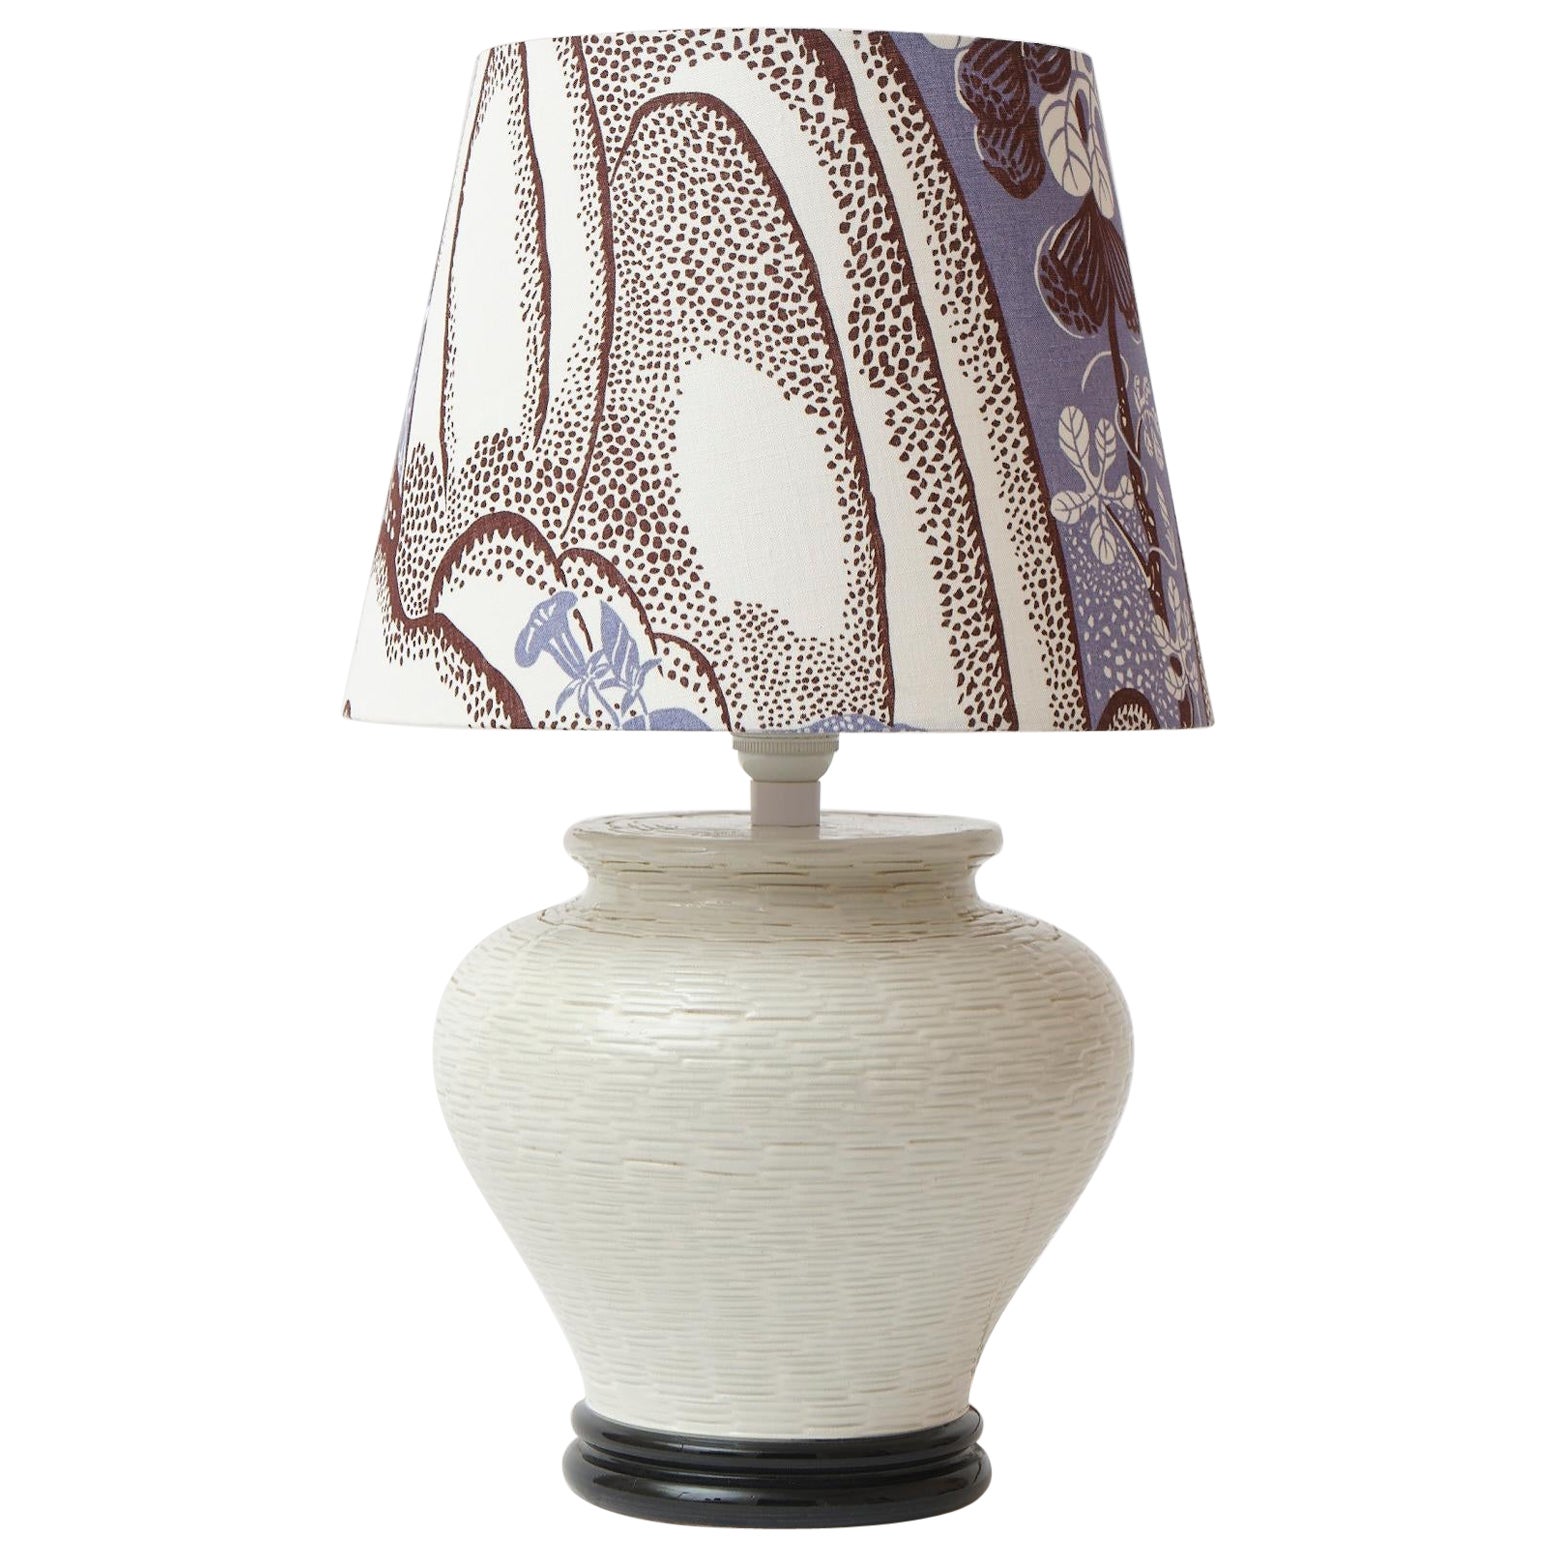 Handgefertigter italienischer Keramik-Tischlampenschirm im Vintage-Stil aus Josef Frank-Textil